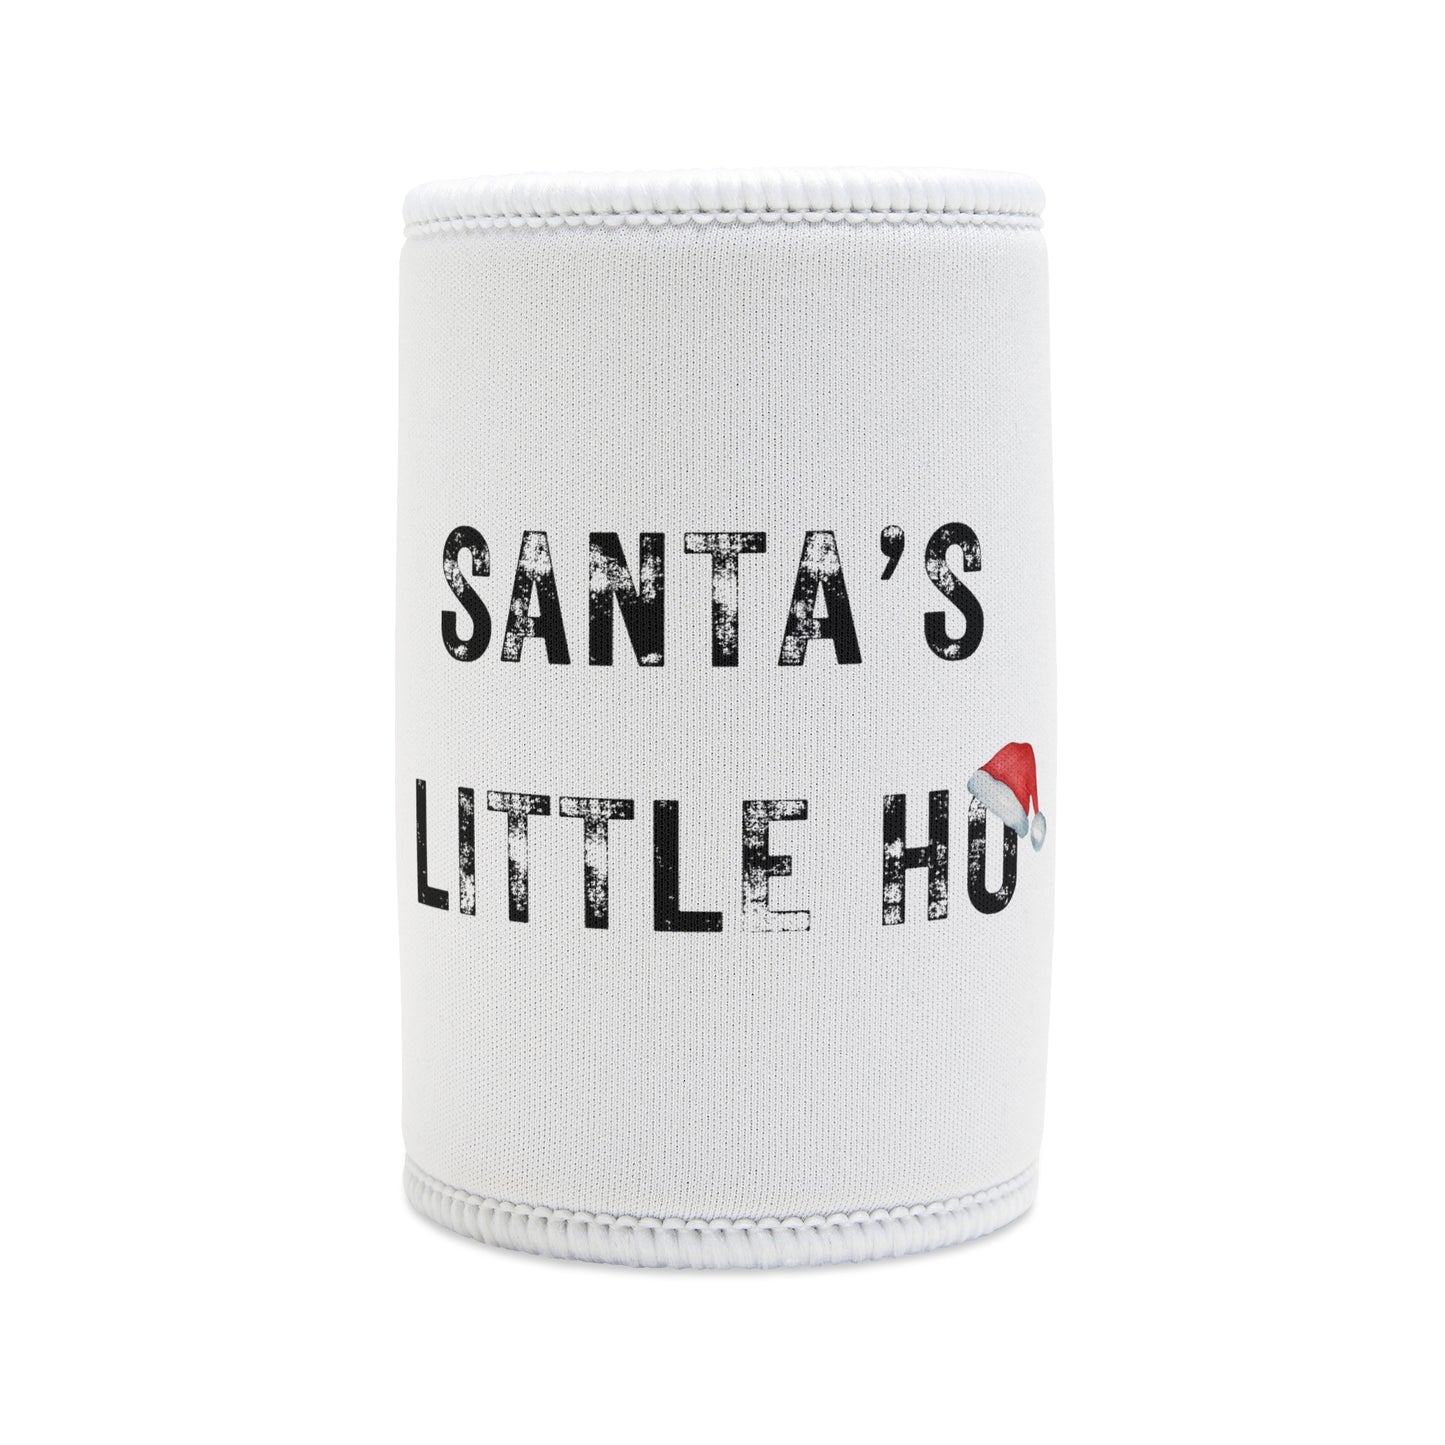 Santa's Little Ho - Stubby Cooler